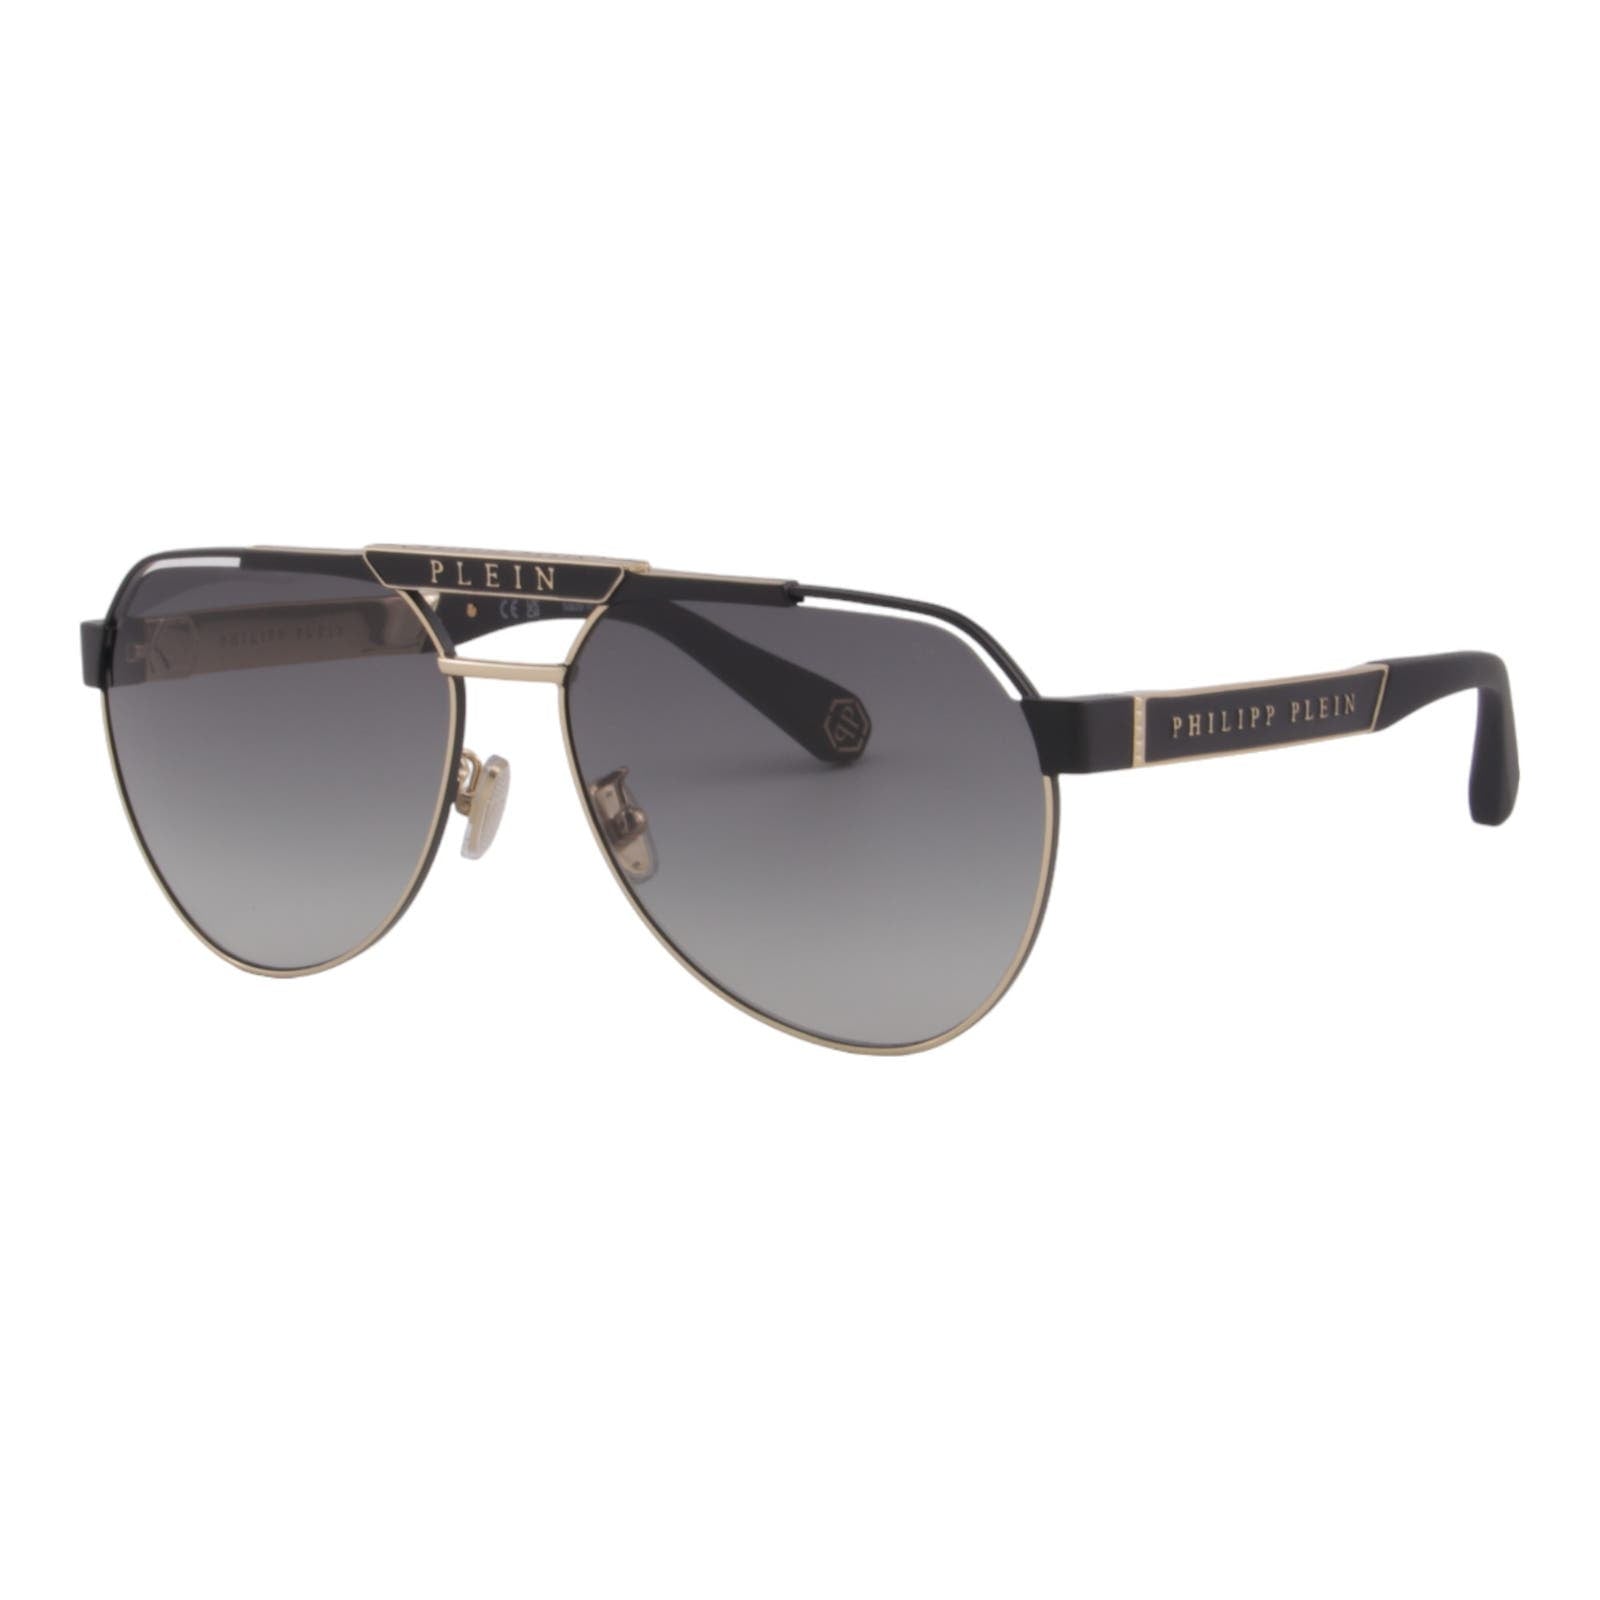 Men Aviator Sunglasses SPP073M-0302 Black & Gold Metal Frame Gray Lens